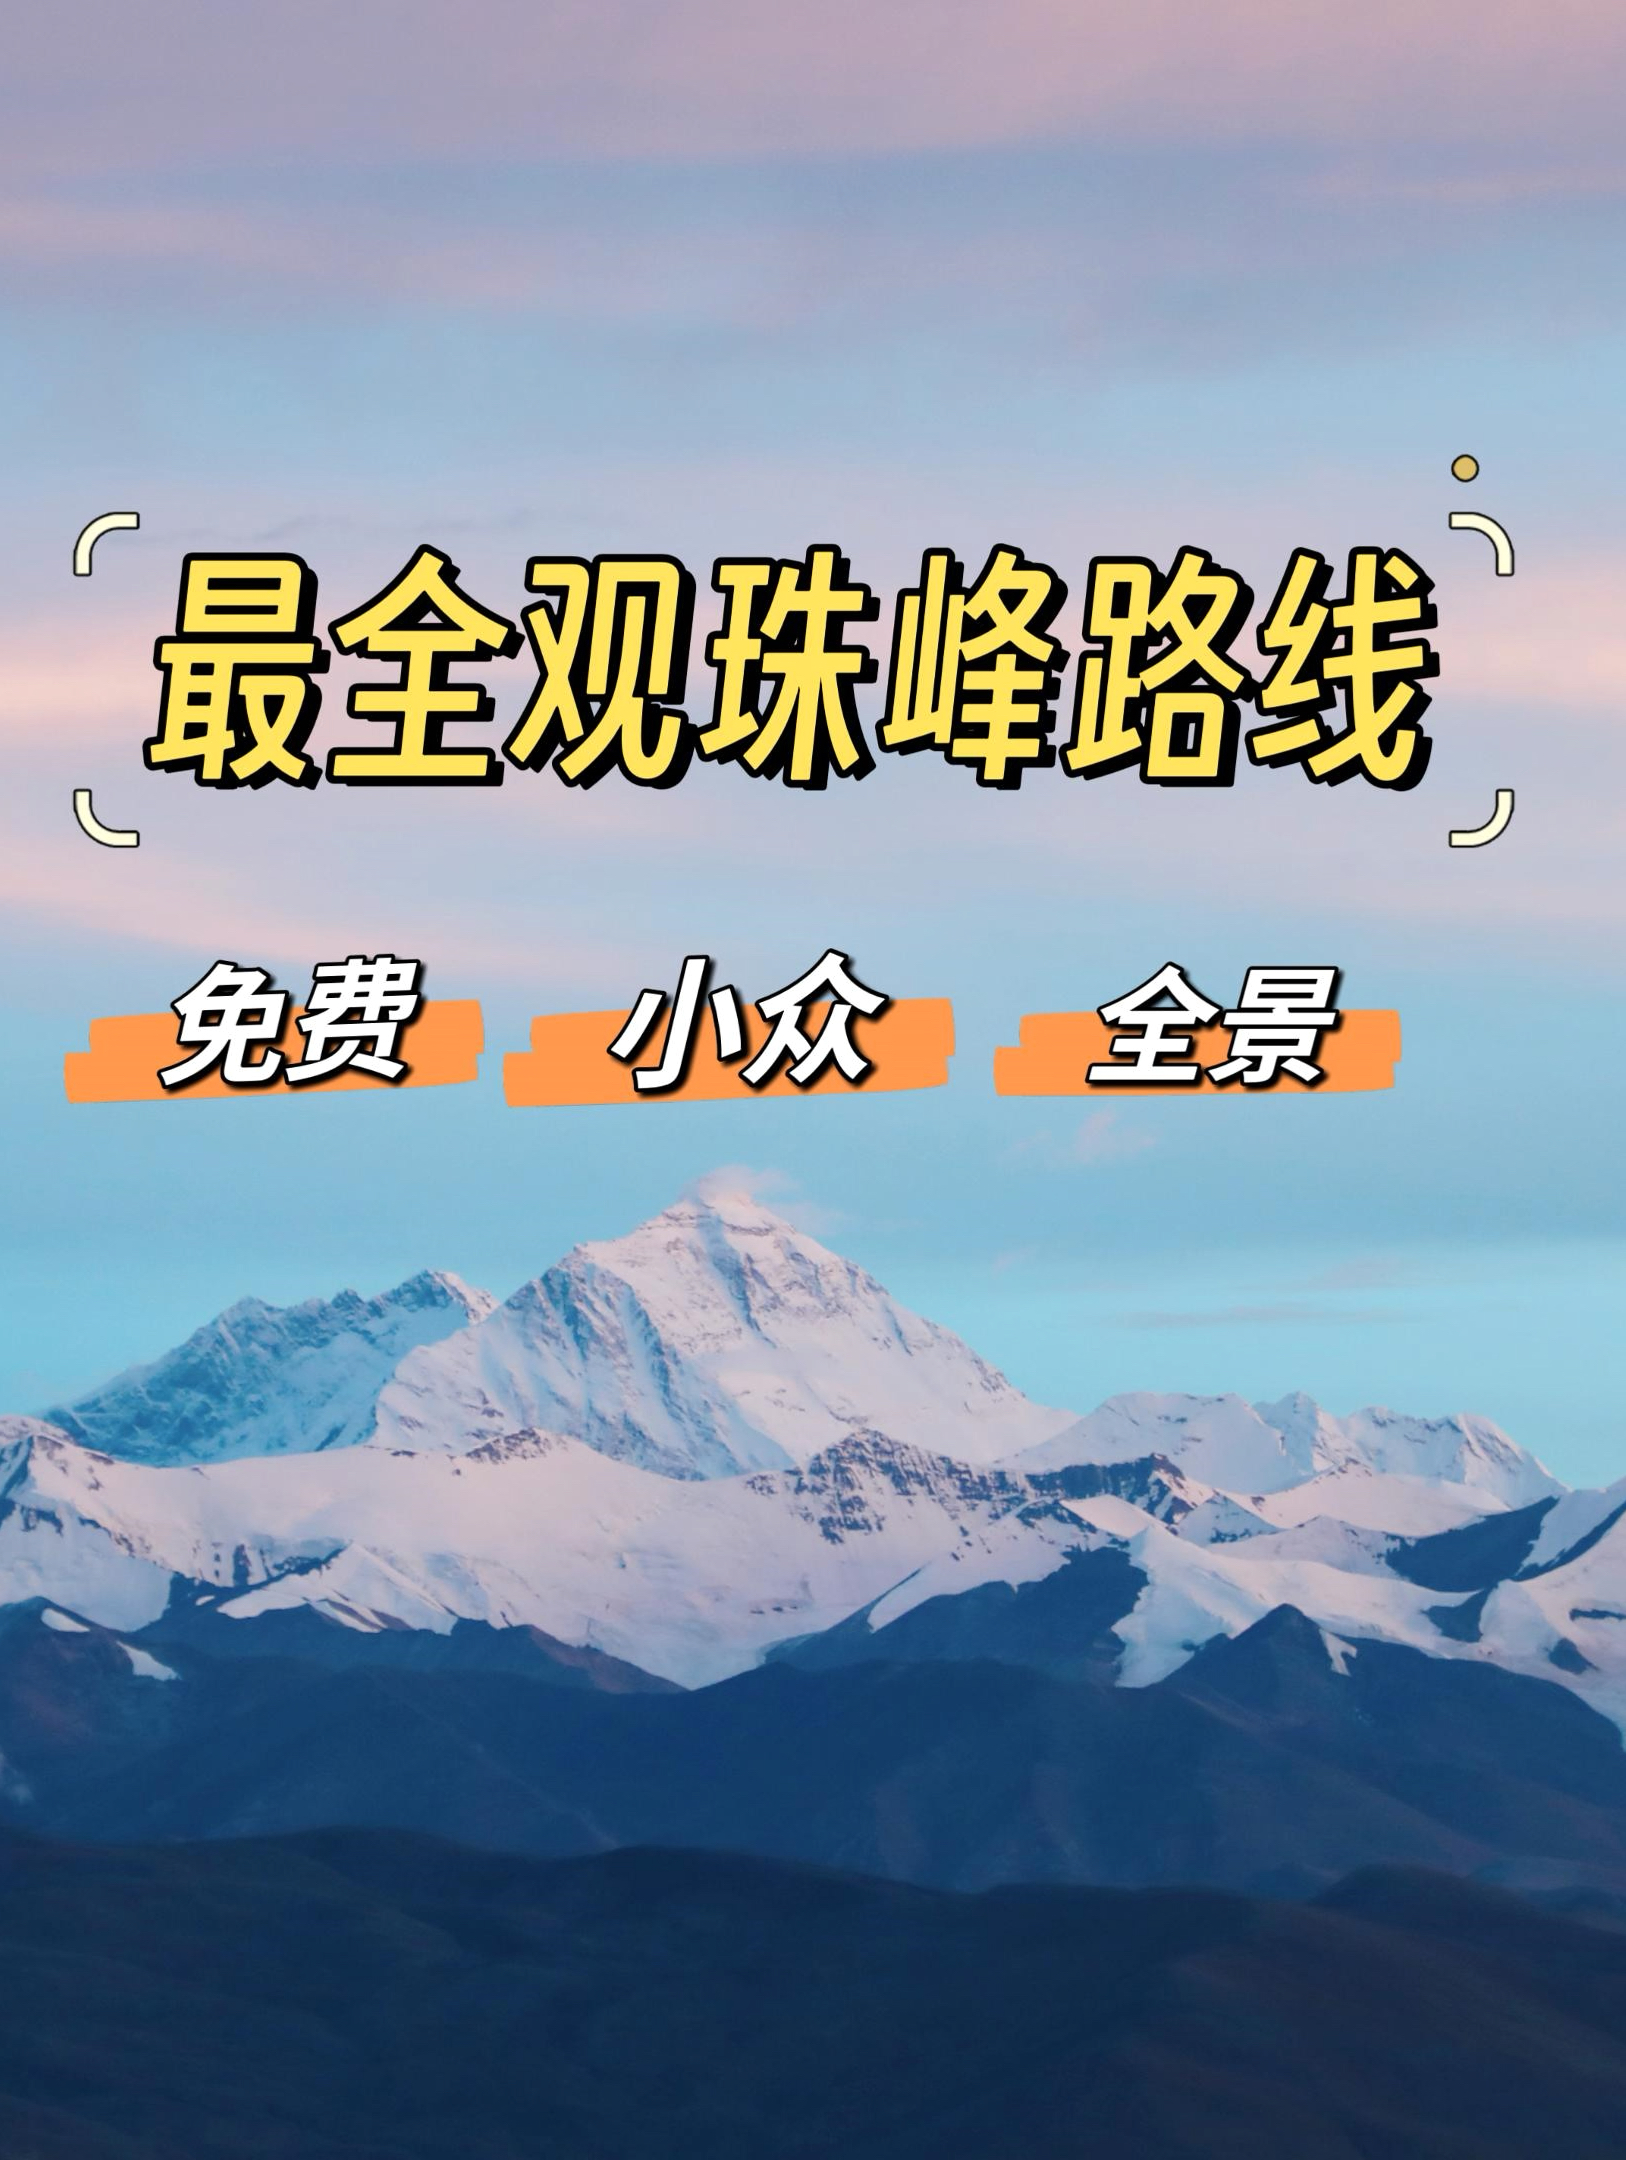 一条视频挑战史上最全观珠峰路线